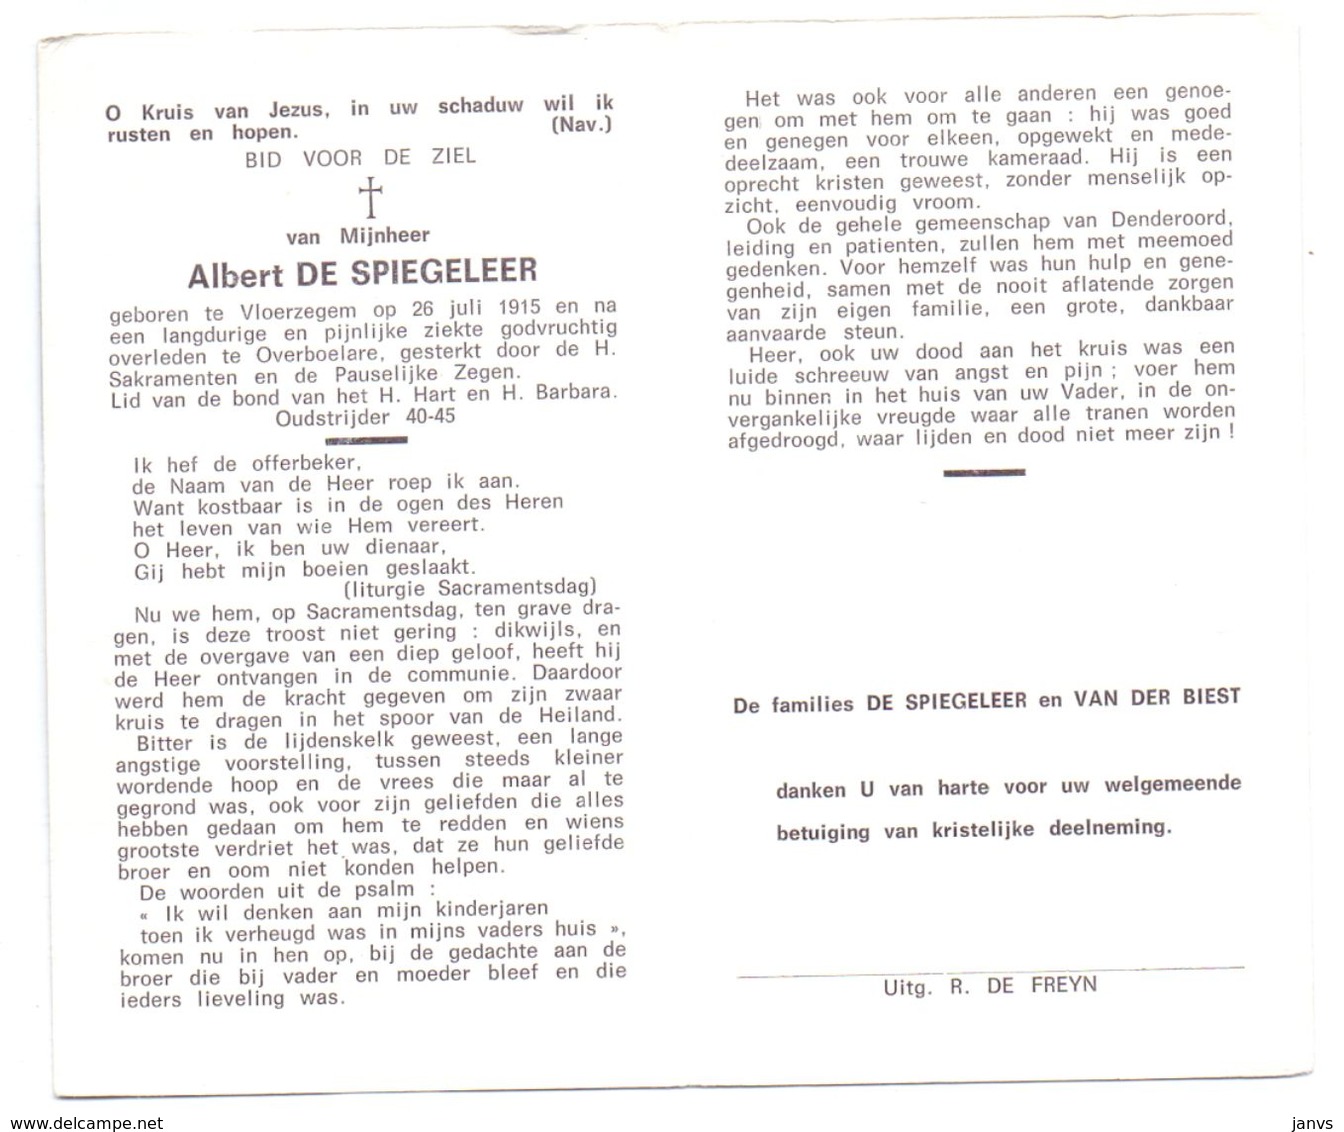 Devotie - Devotion - Albert De Spiegeleer - Vloerzegem 1915 - Overboelare - Oudstrijder - Obituary Notices